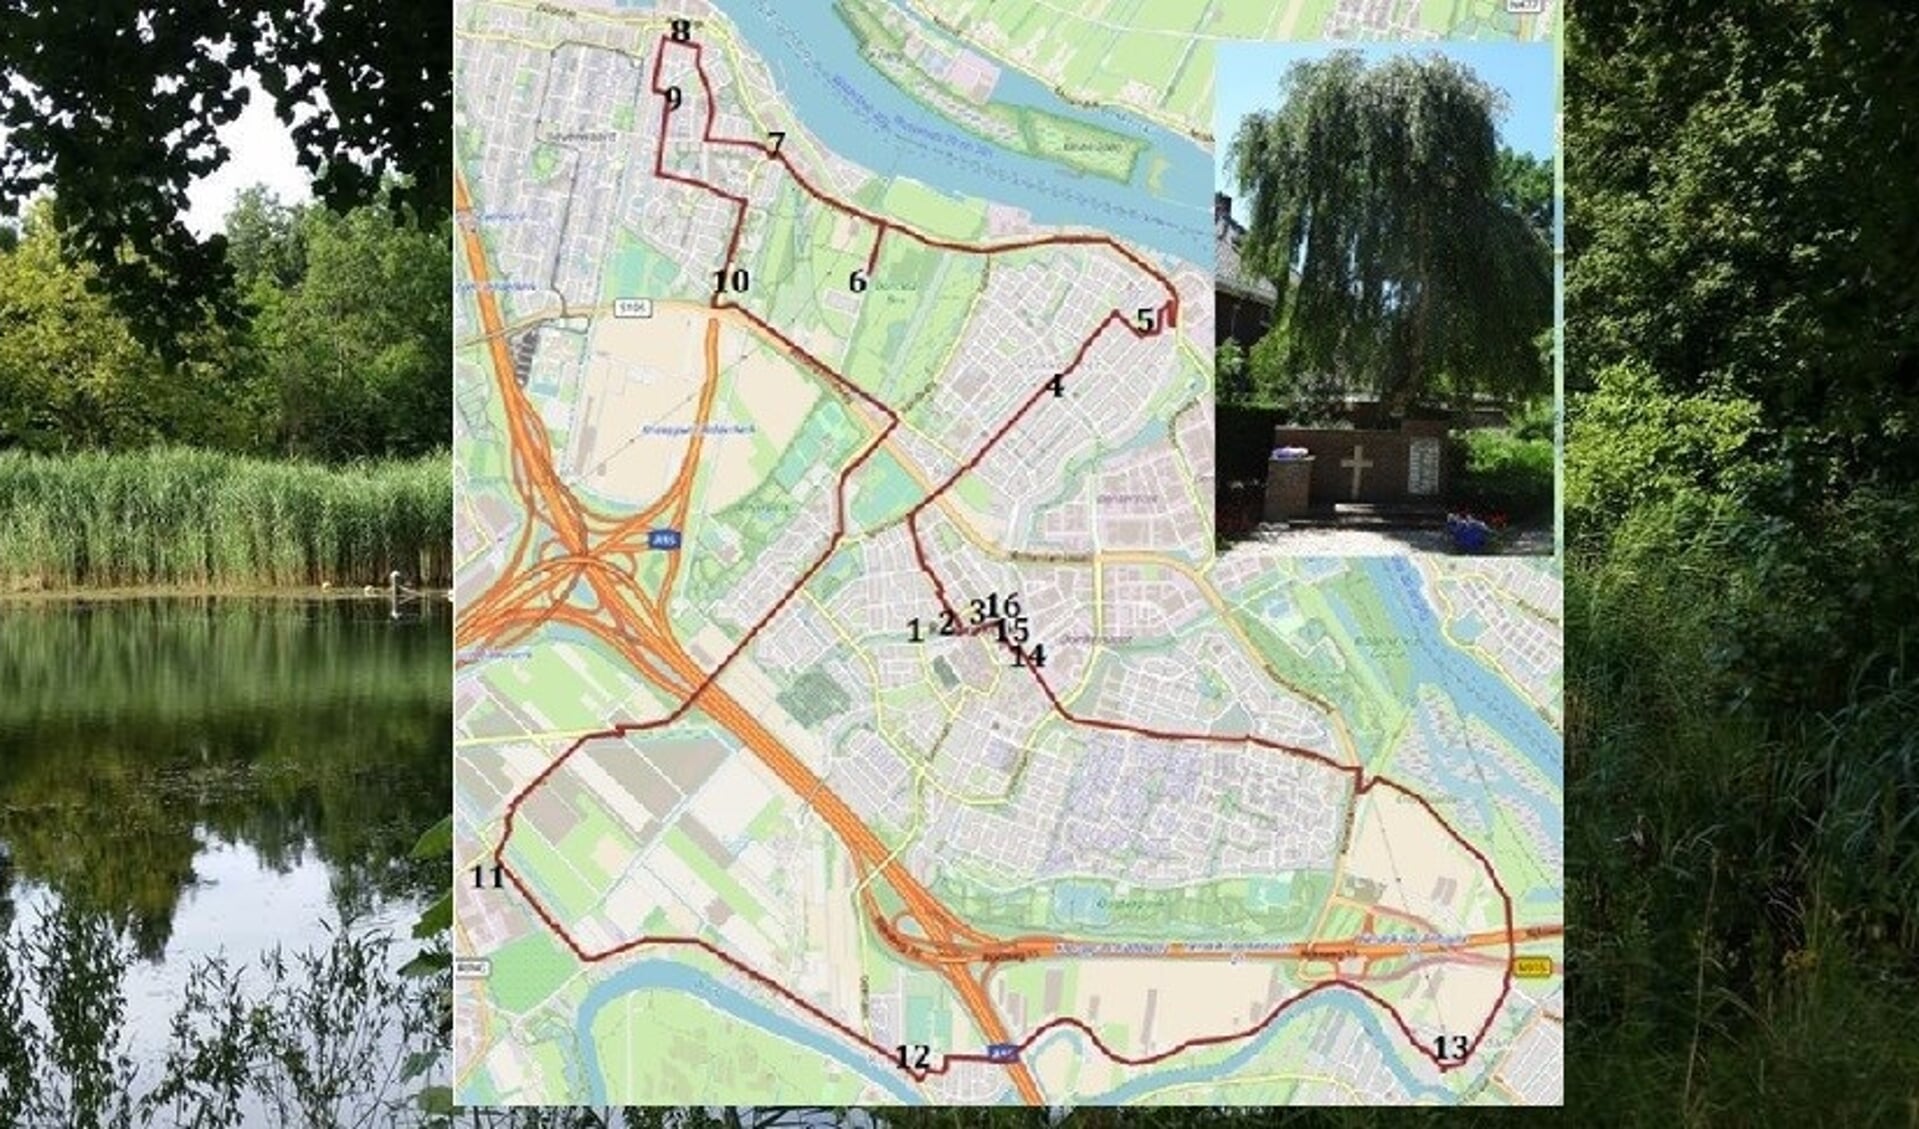 De route langs de gedenkbomen in Ridderkerk